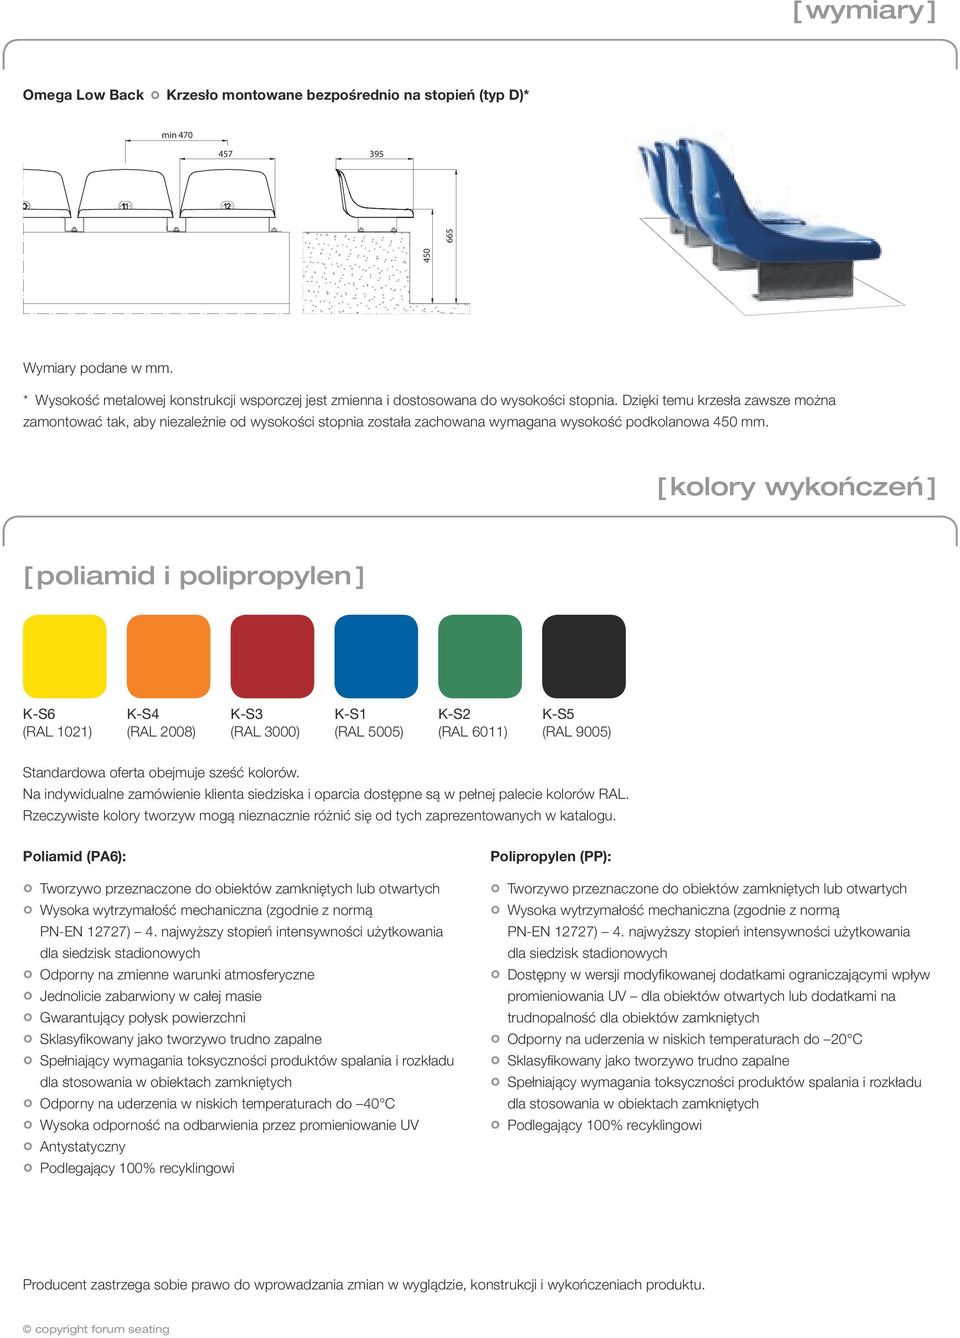 Dzięki temu krzesła zawsze można zamontować tak, aby niezależnie od wysokości stopnia została zachowana wymagana wysokość podkolanowa 450 mm.